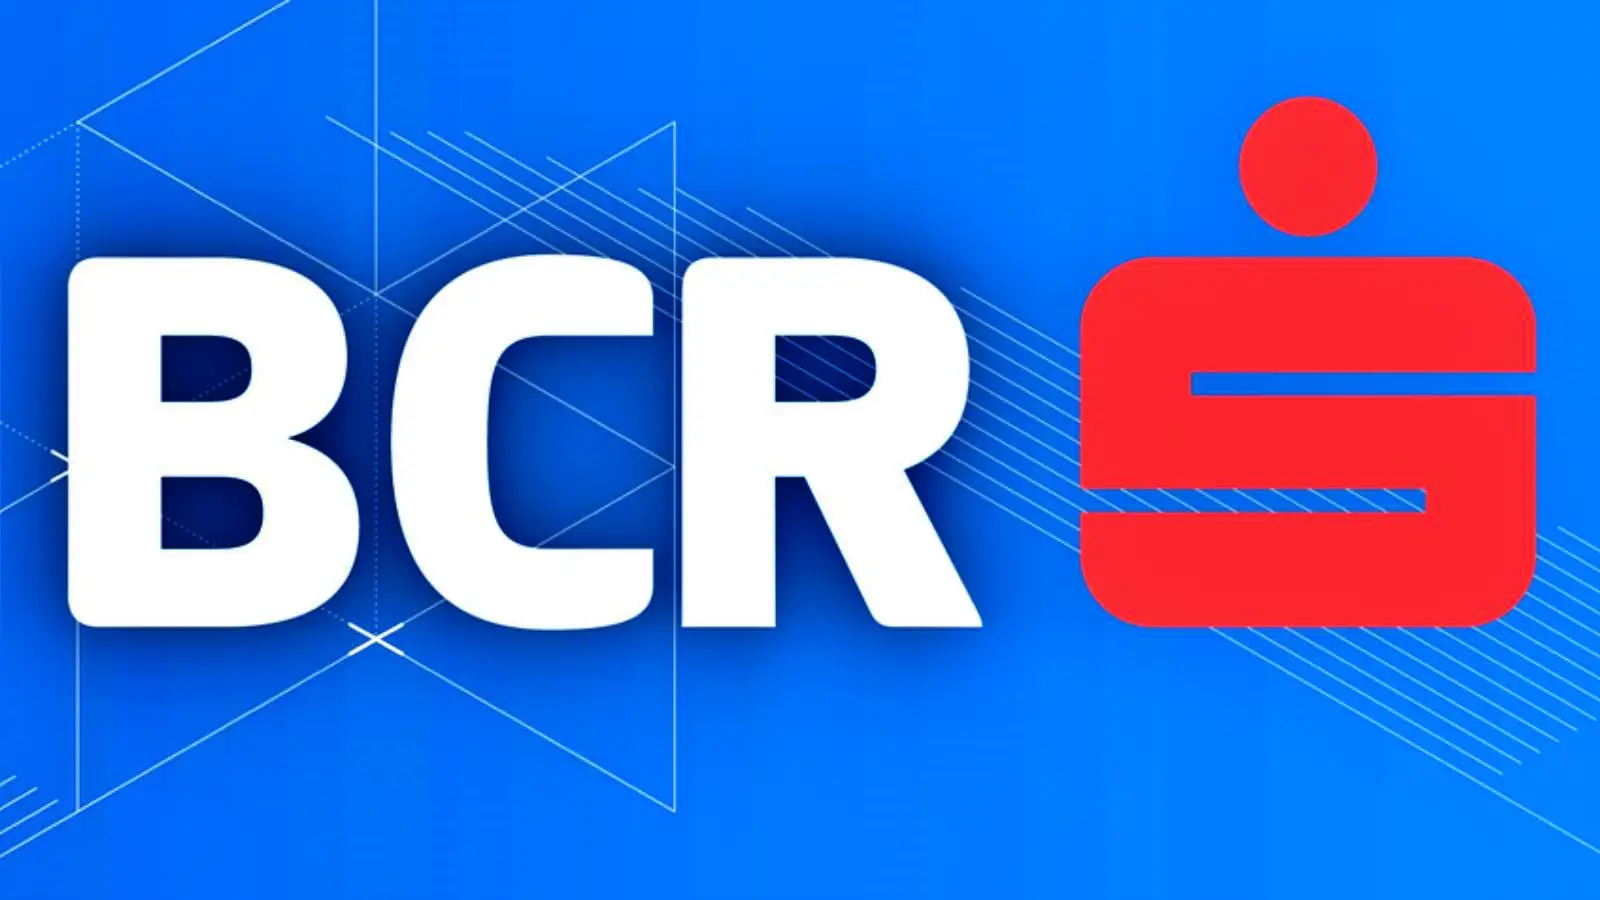 La décision de BCR Roumanie a annoncé des changements apportés aux clients